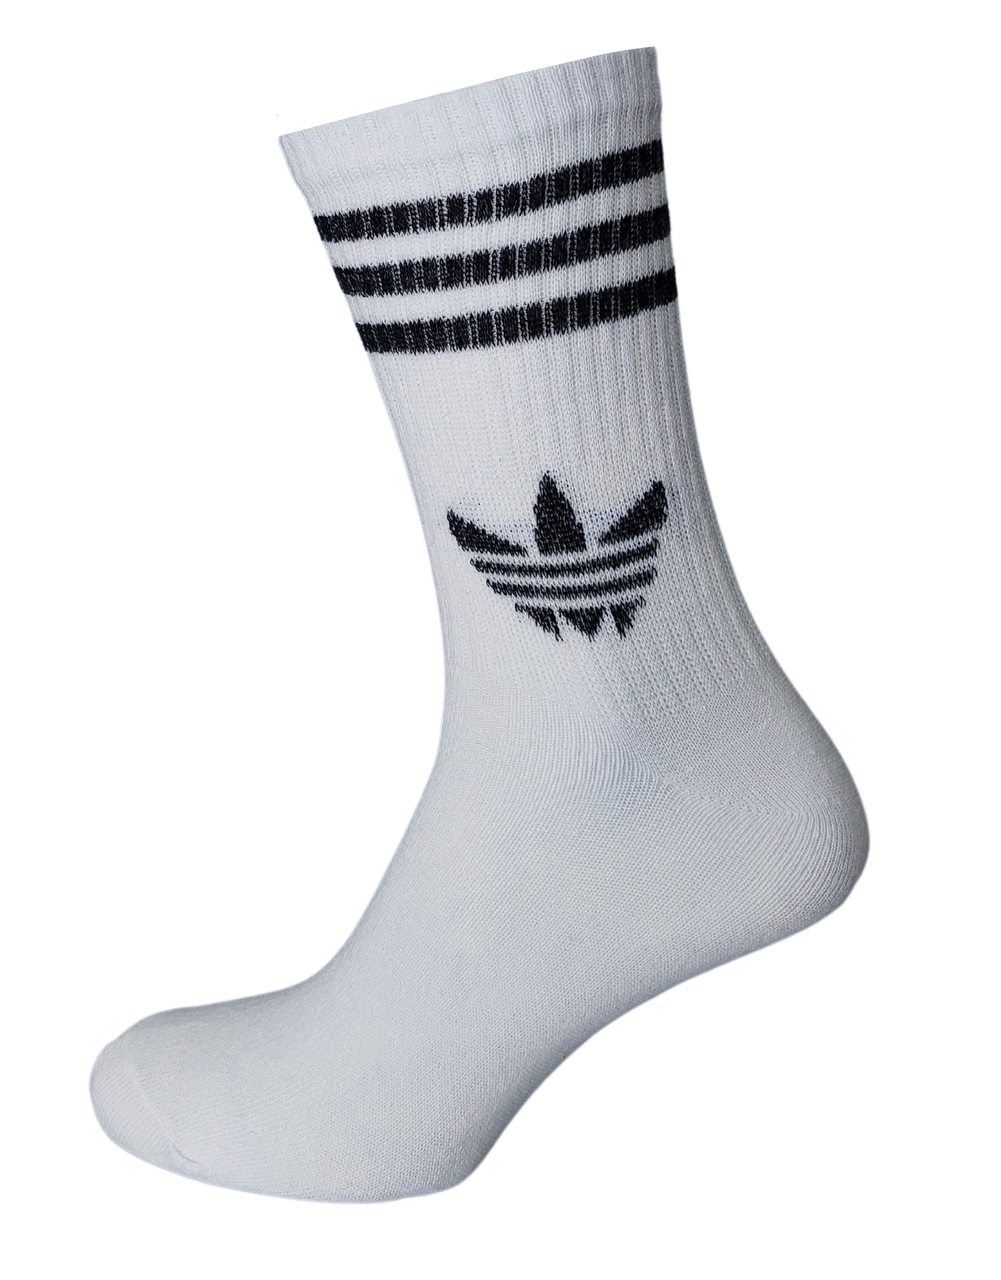 Мужские белые носки спортивные Adidas Черная полоска 40-45р.